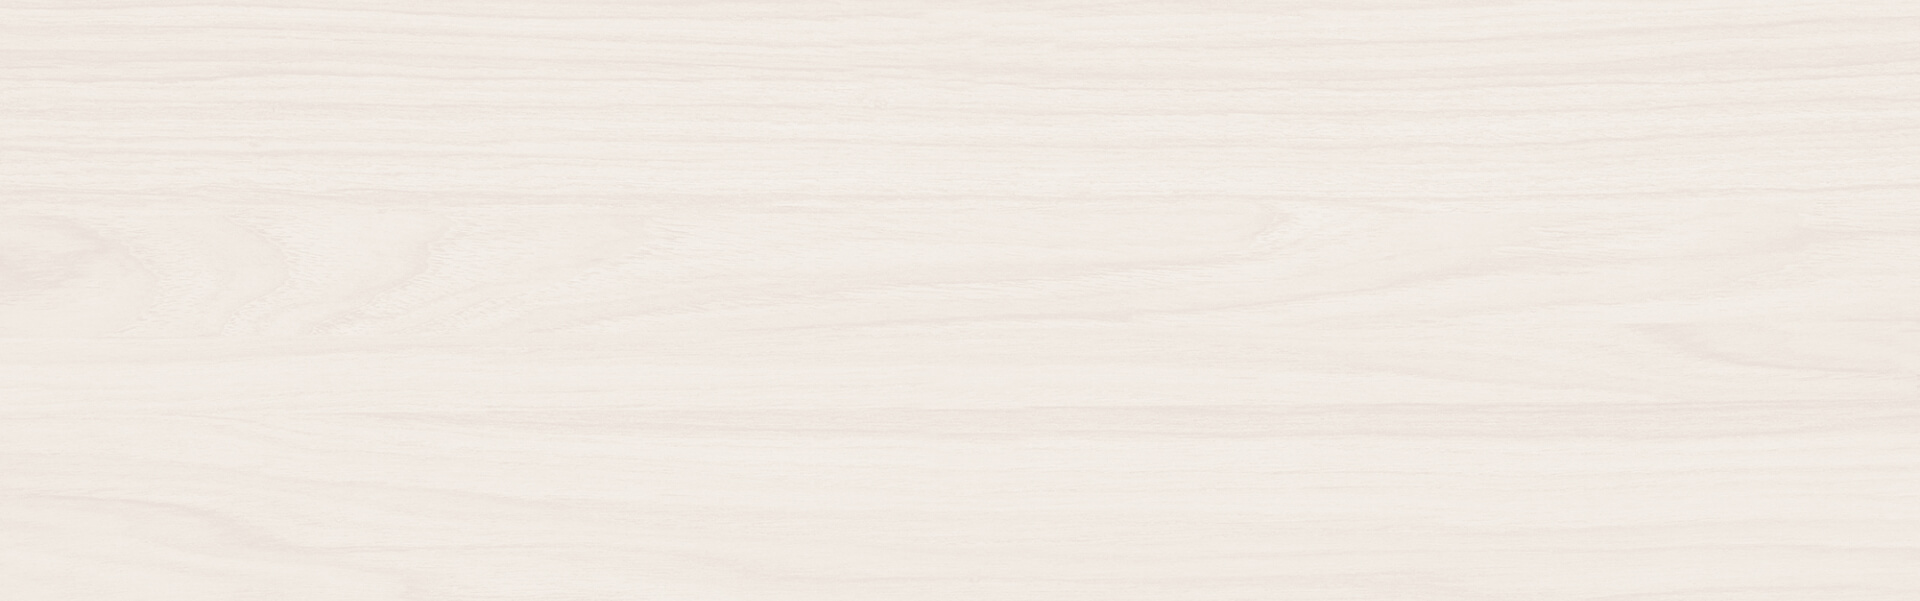 IMG_E2914 - Rajnochovice-Bílová paseka